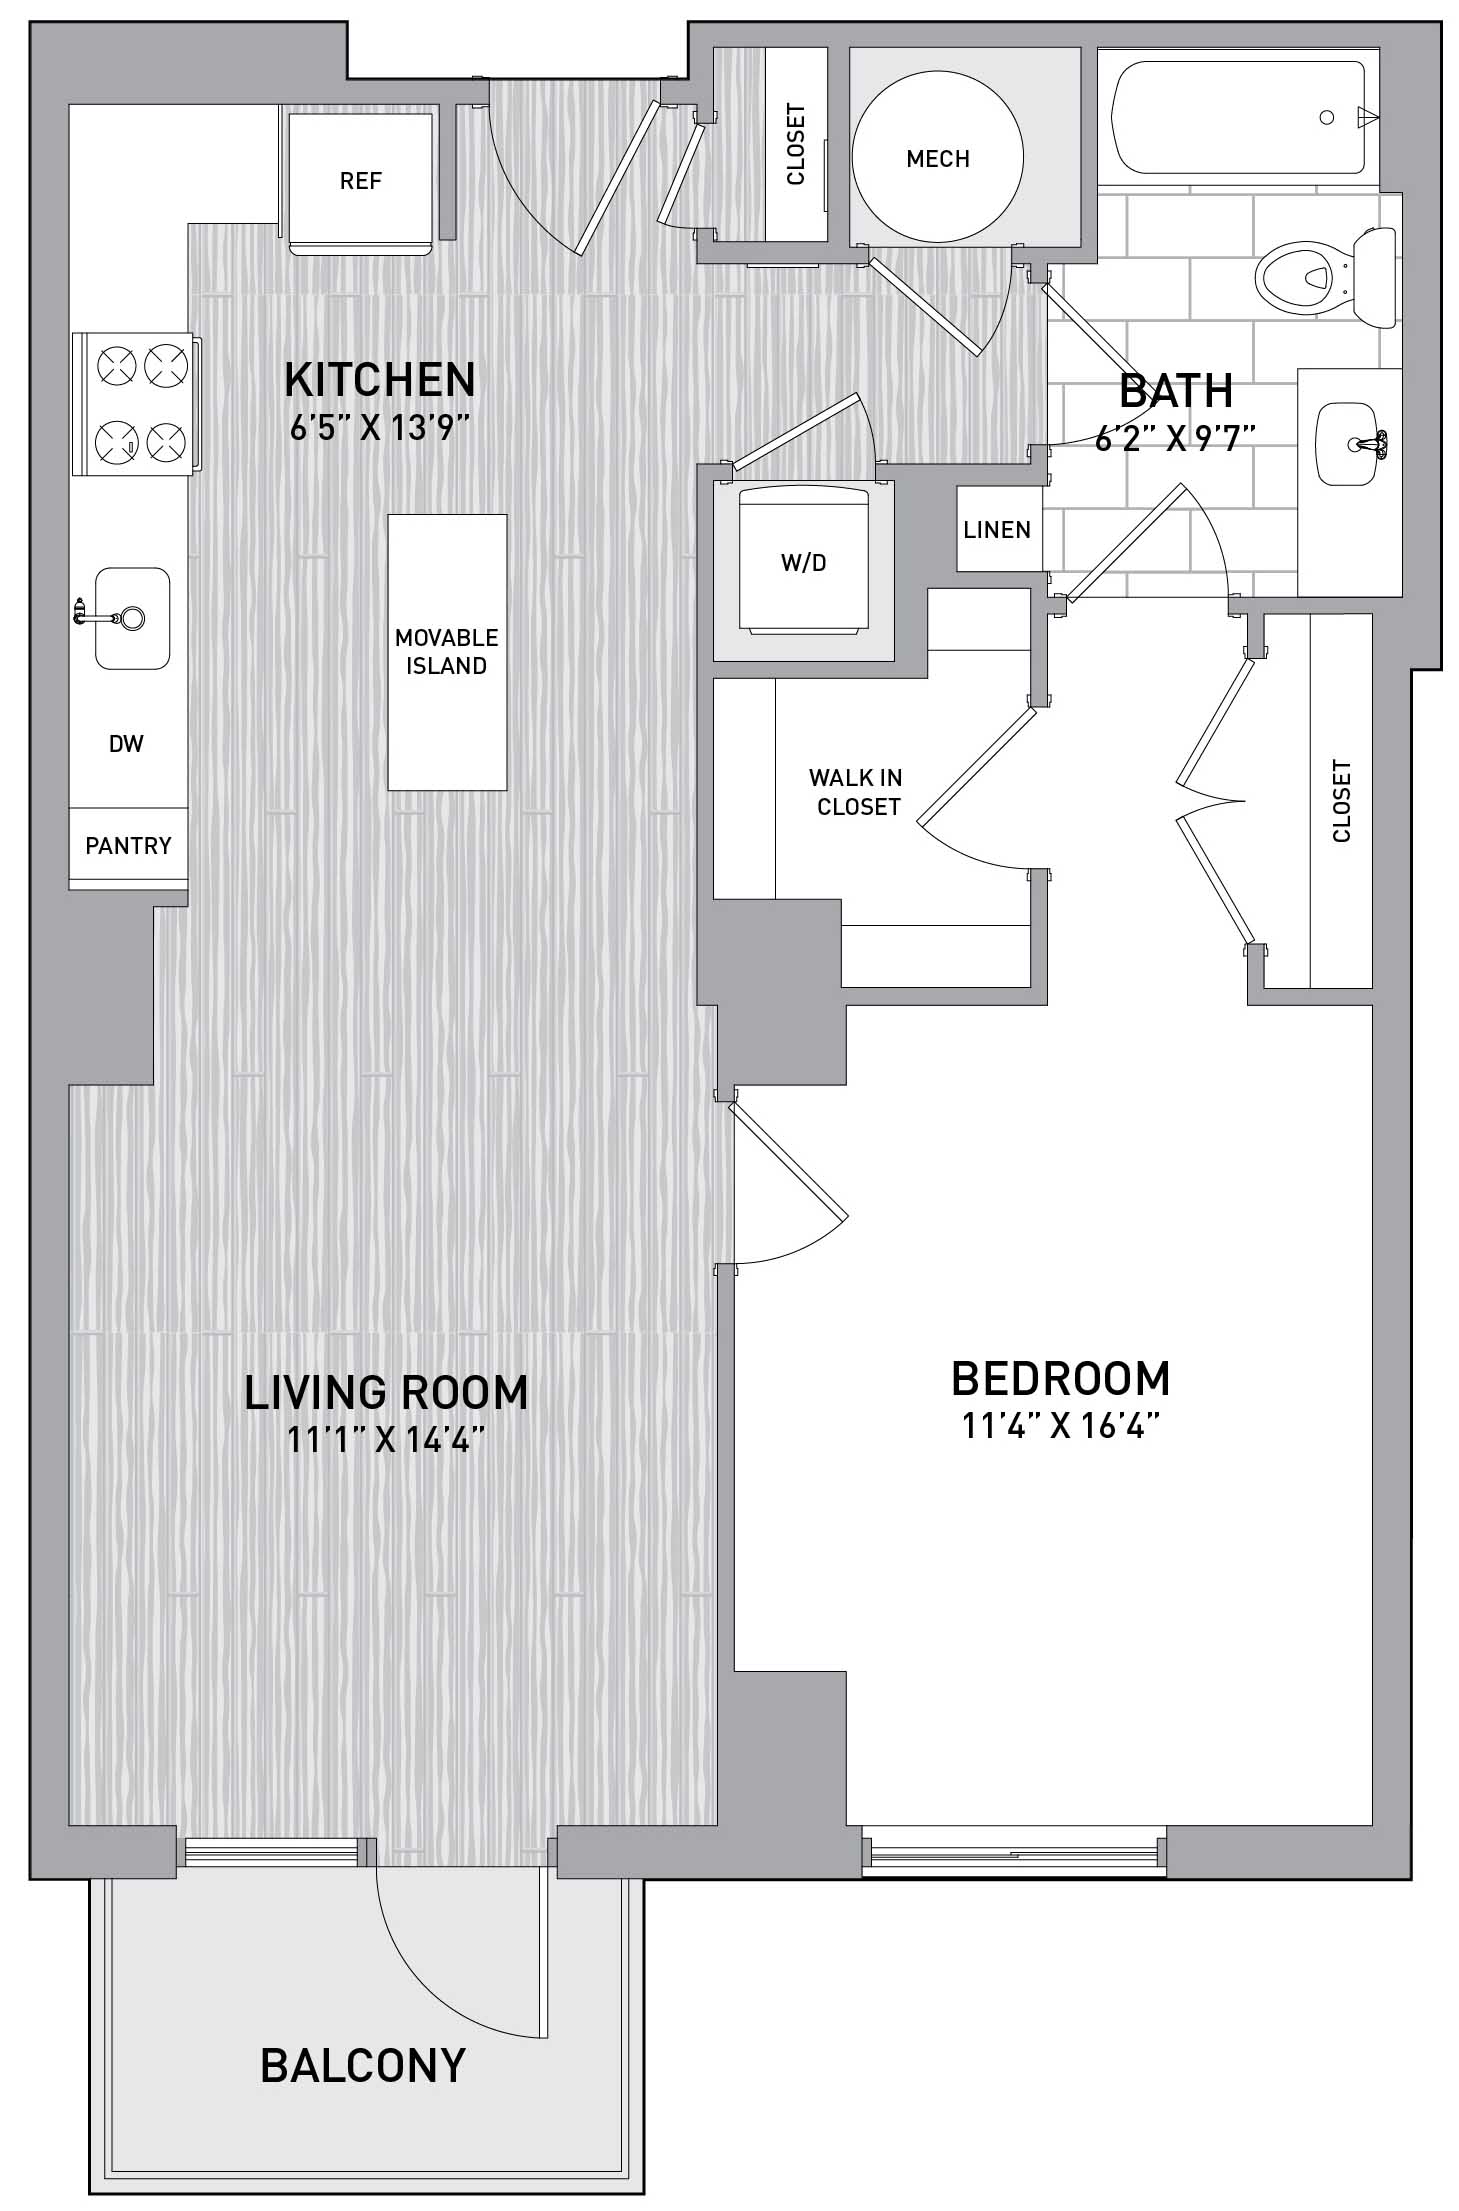 Floorplan Image of unit 151-0810